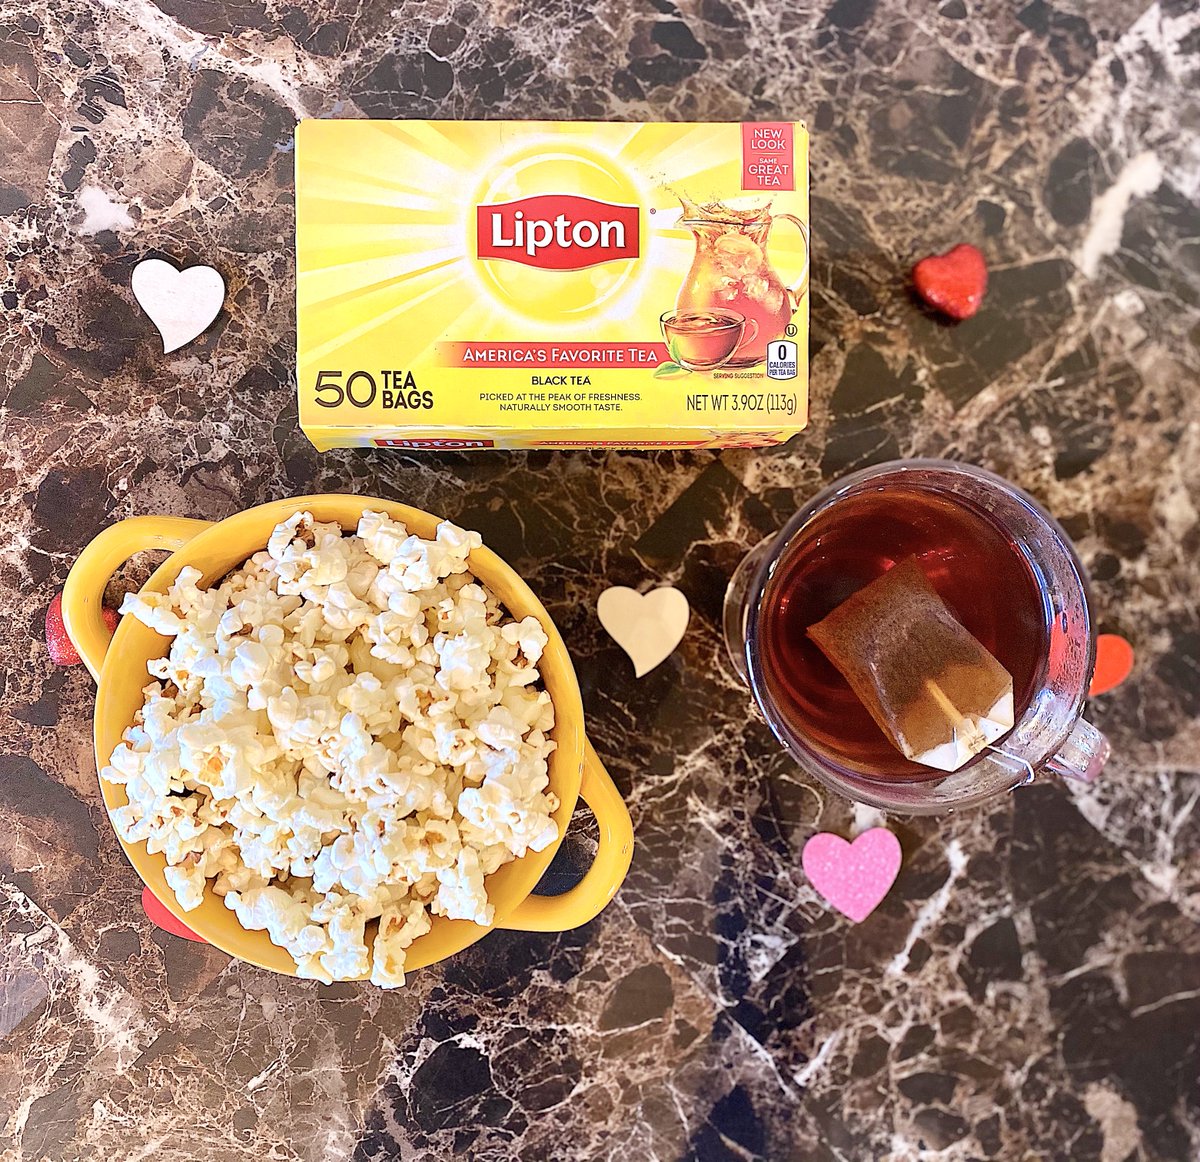 Пока чай стынет двое играли. Липтон полезный завтрак. Липтон сит Шри Ланка. Чек торт и Липтон сумка 822. Как сделать Липтон в домашних условиях чёрный чай.